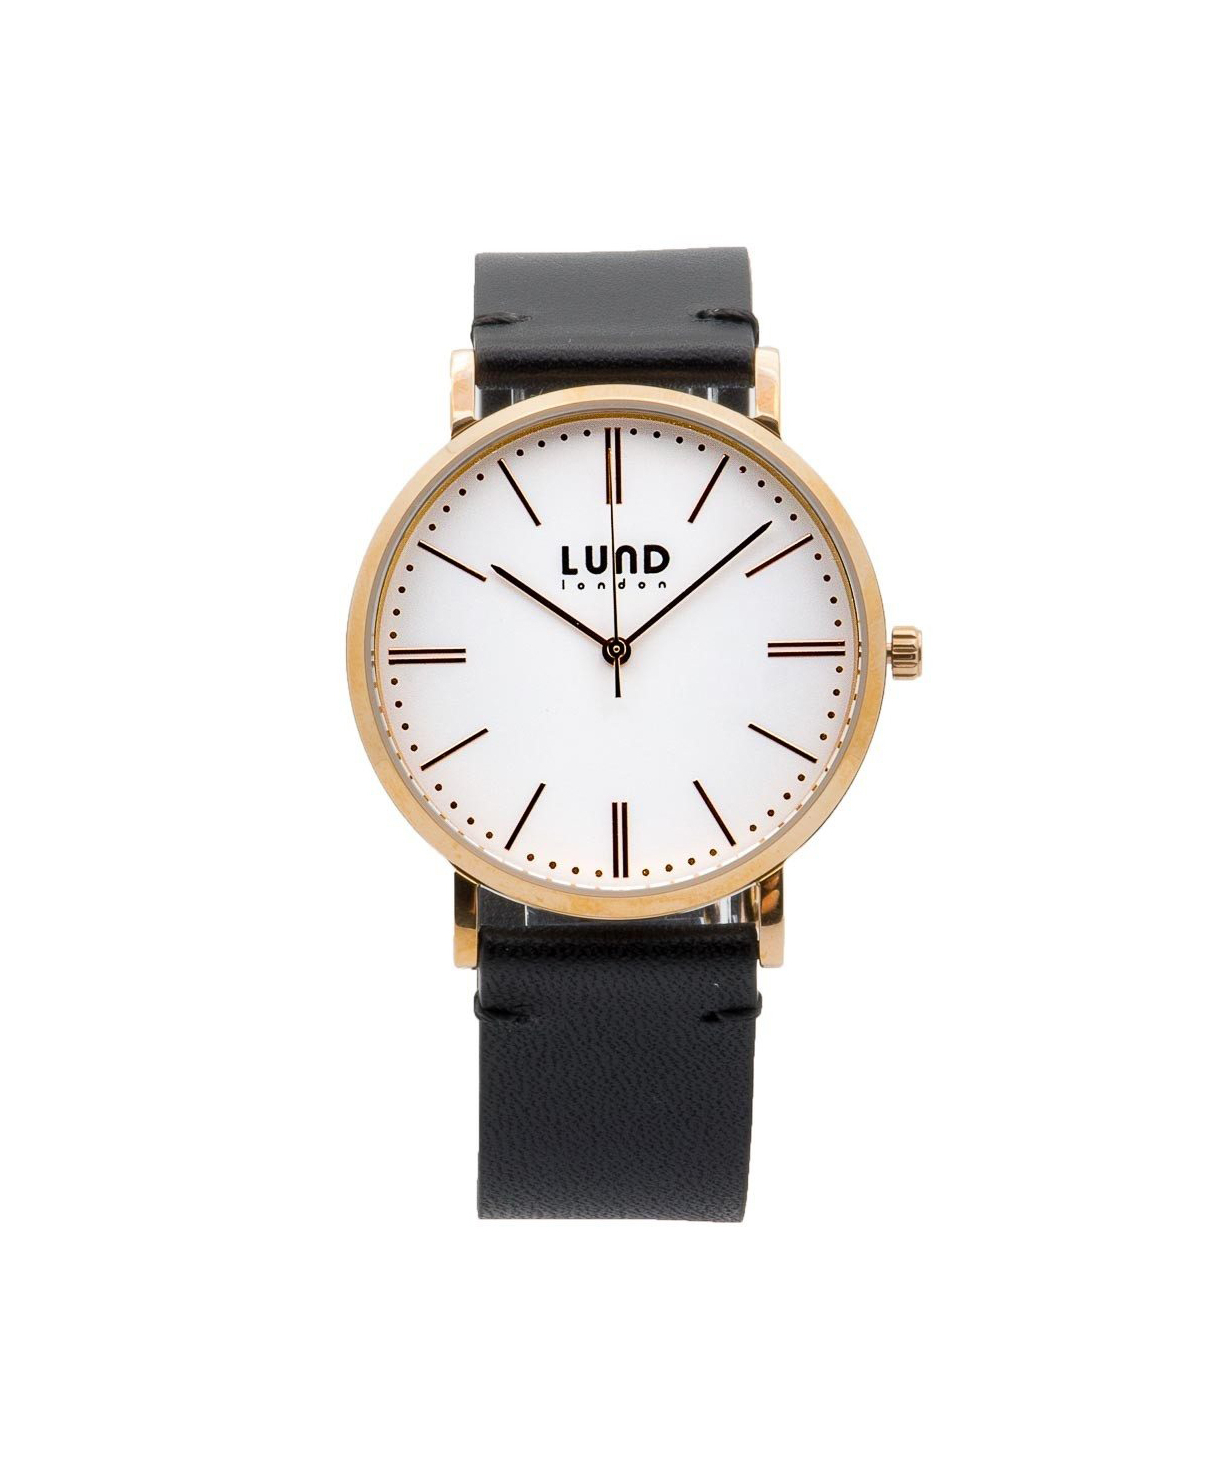 Belgium․ watch №026 Lund